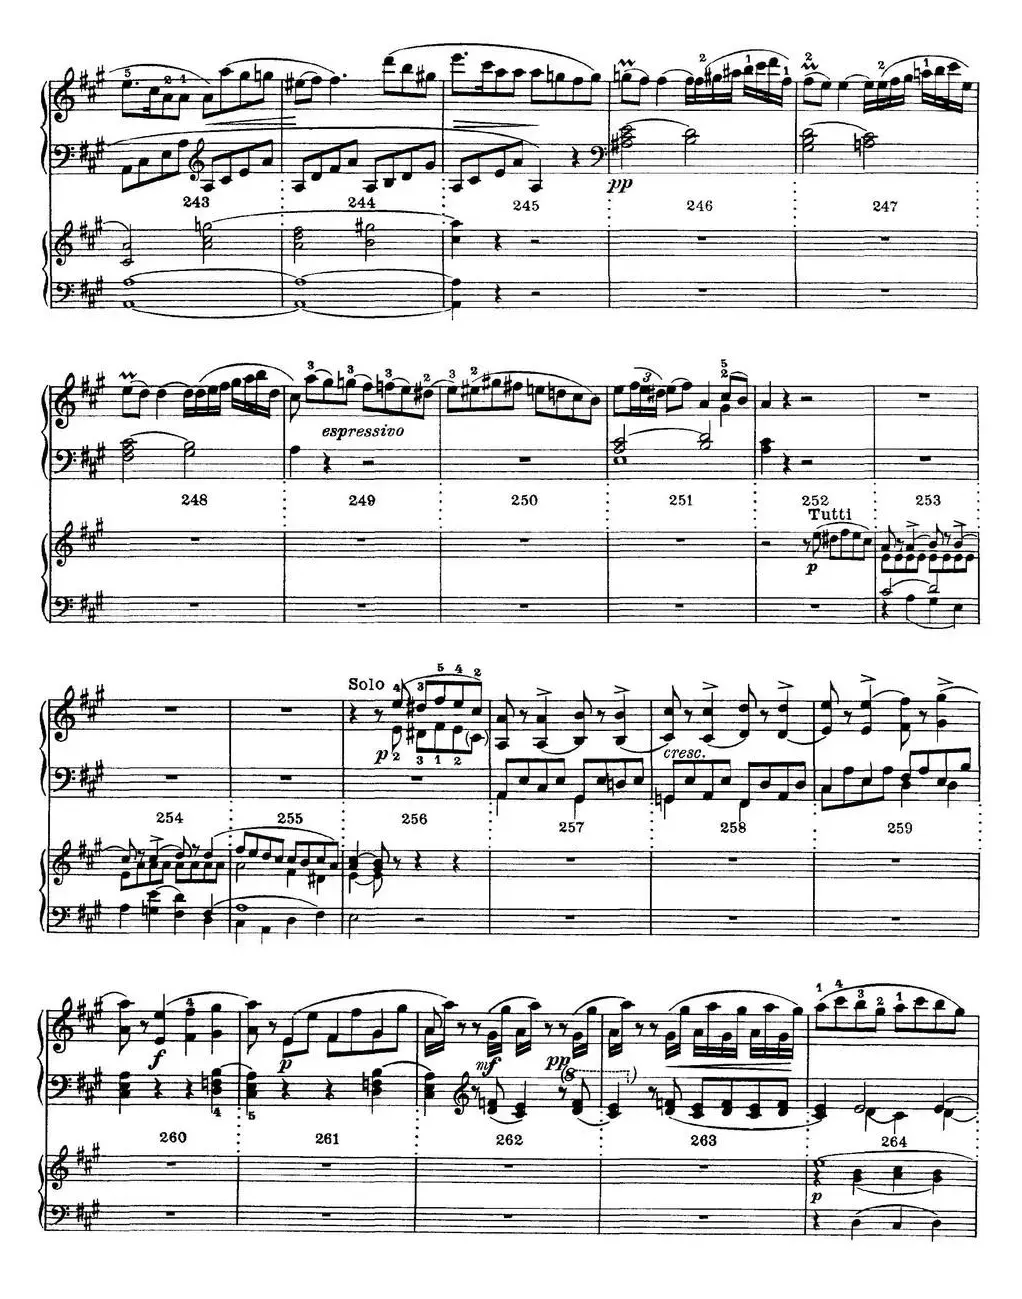 二十八部钢琴协奏曲 No.12（P1-15）